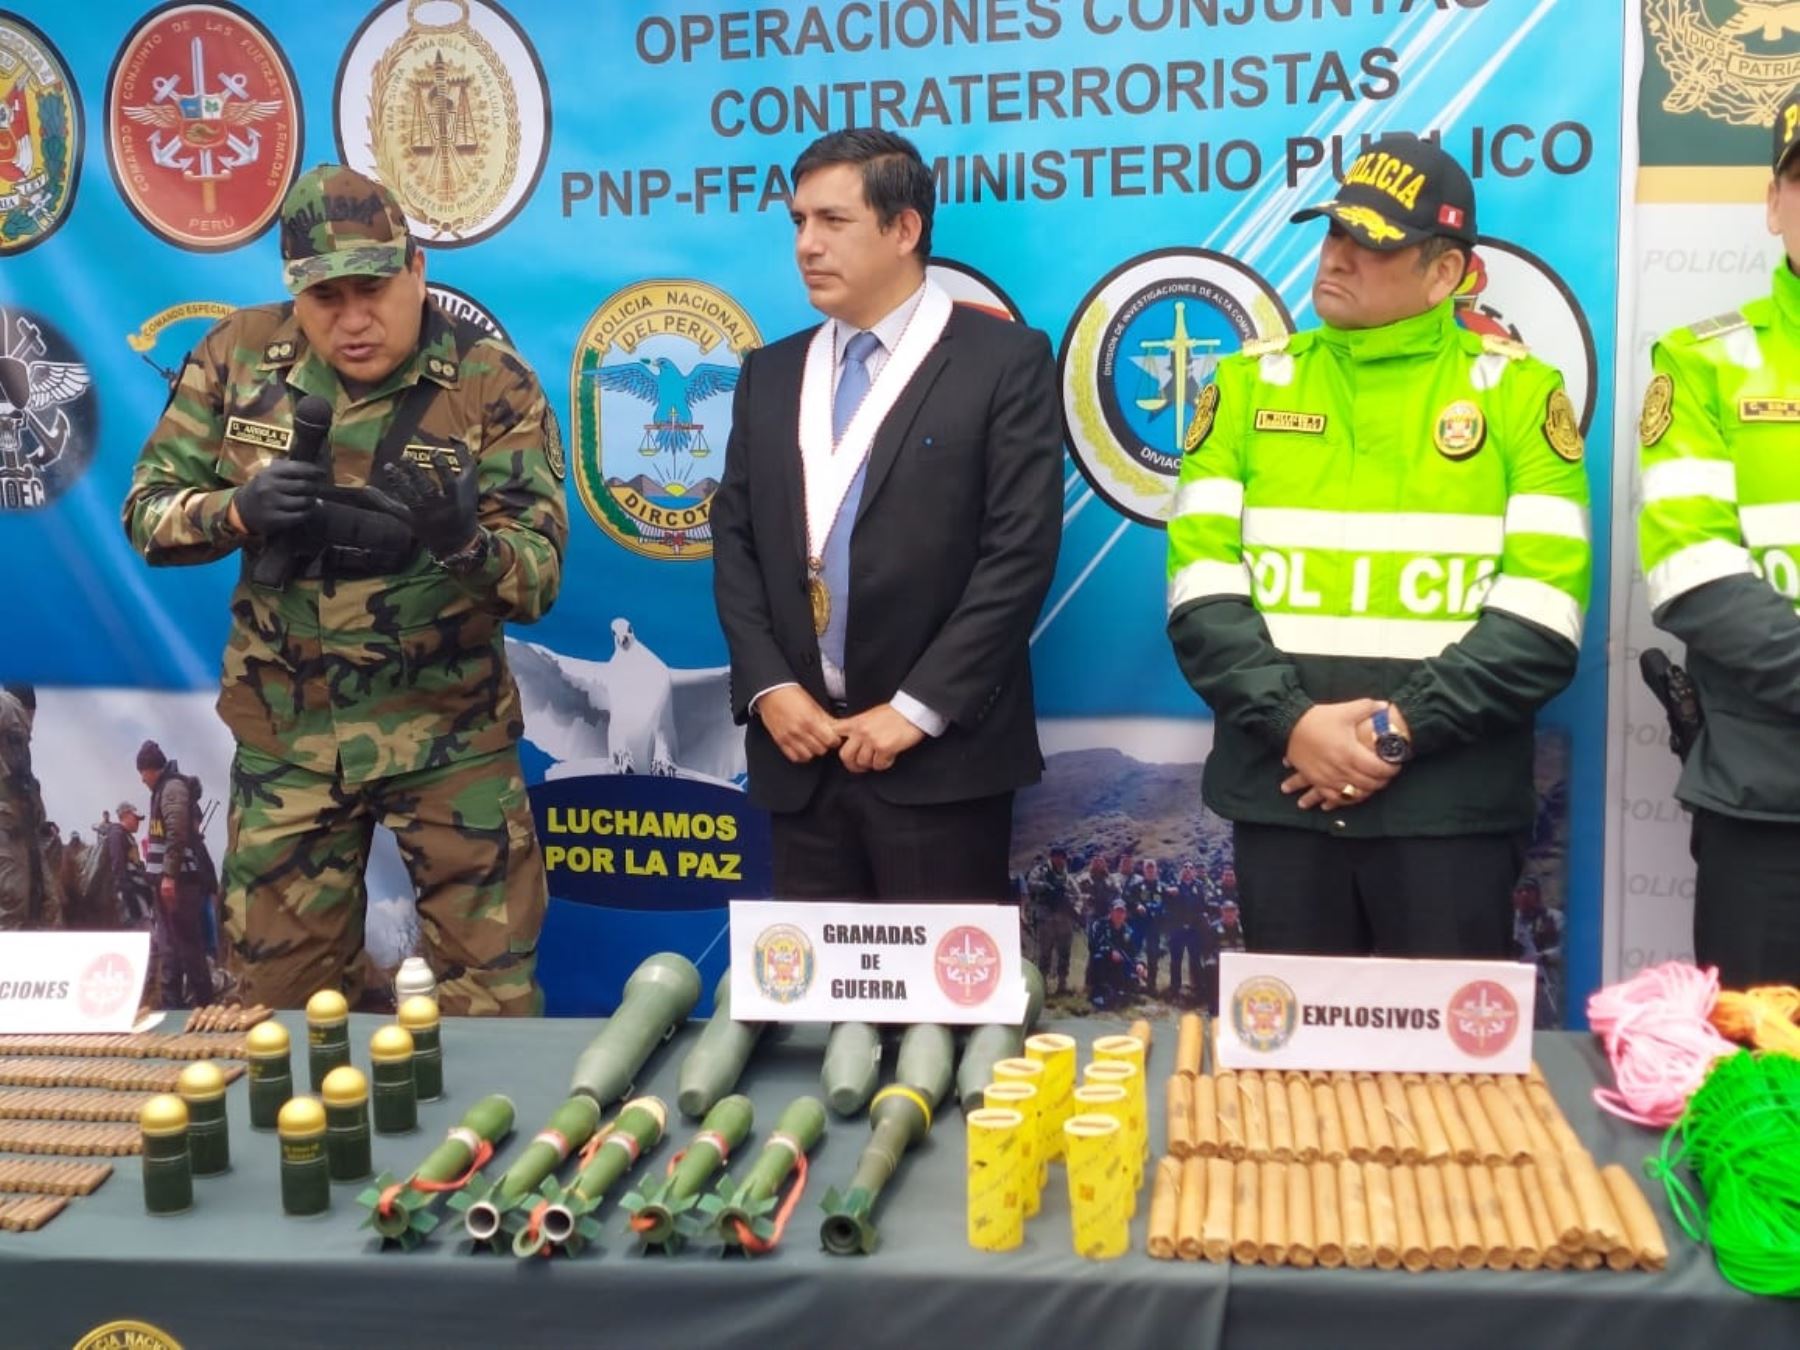 En una operación conjunta, miembros del Ejército del Perú y la Policía Nacional incautaron armamento y explosivos hallados en una caleta terrorista descubierta en el Vraem. Foto: Pedro Tinoco